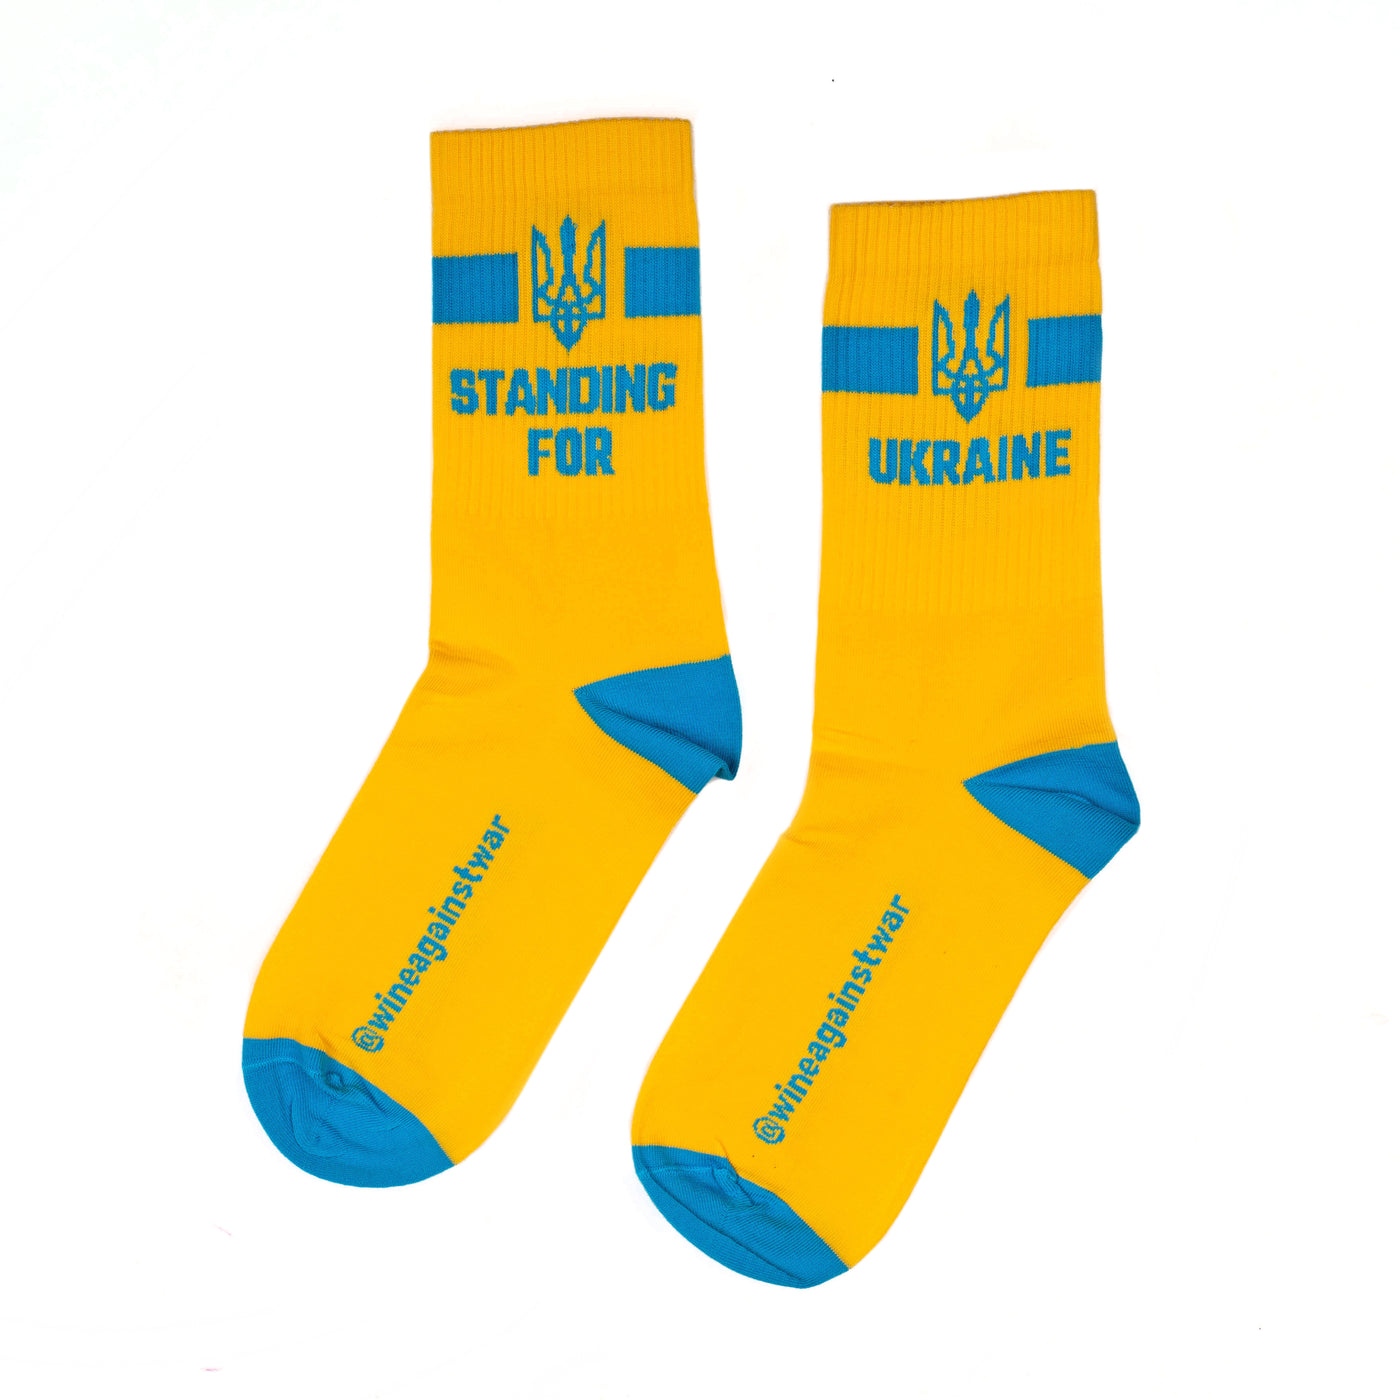 Standing for Ukraine Socks